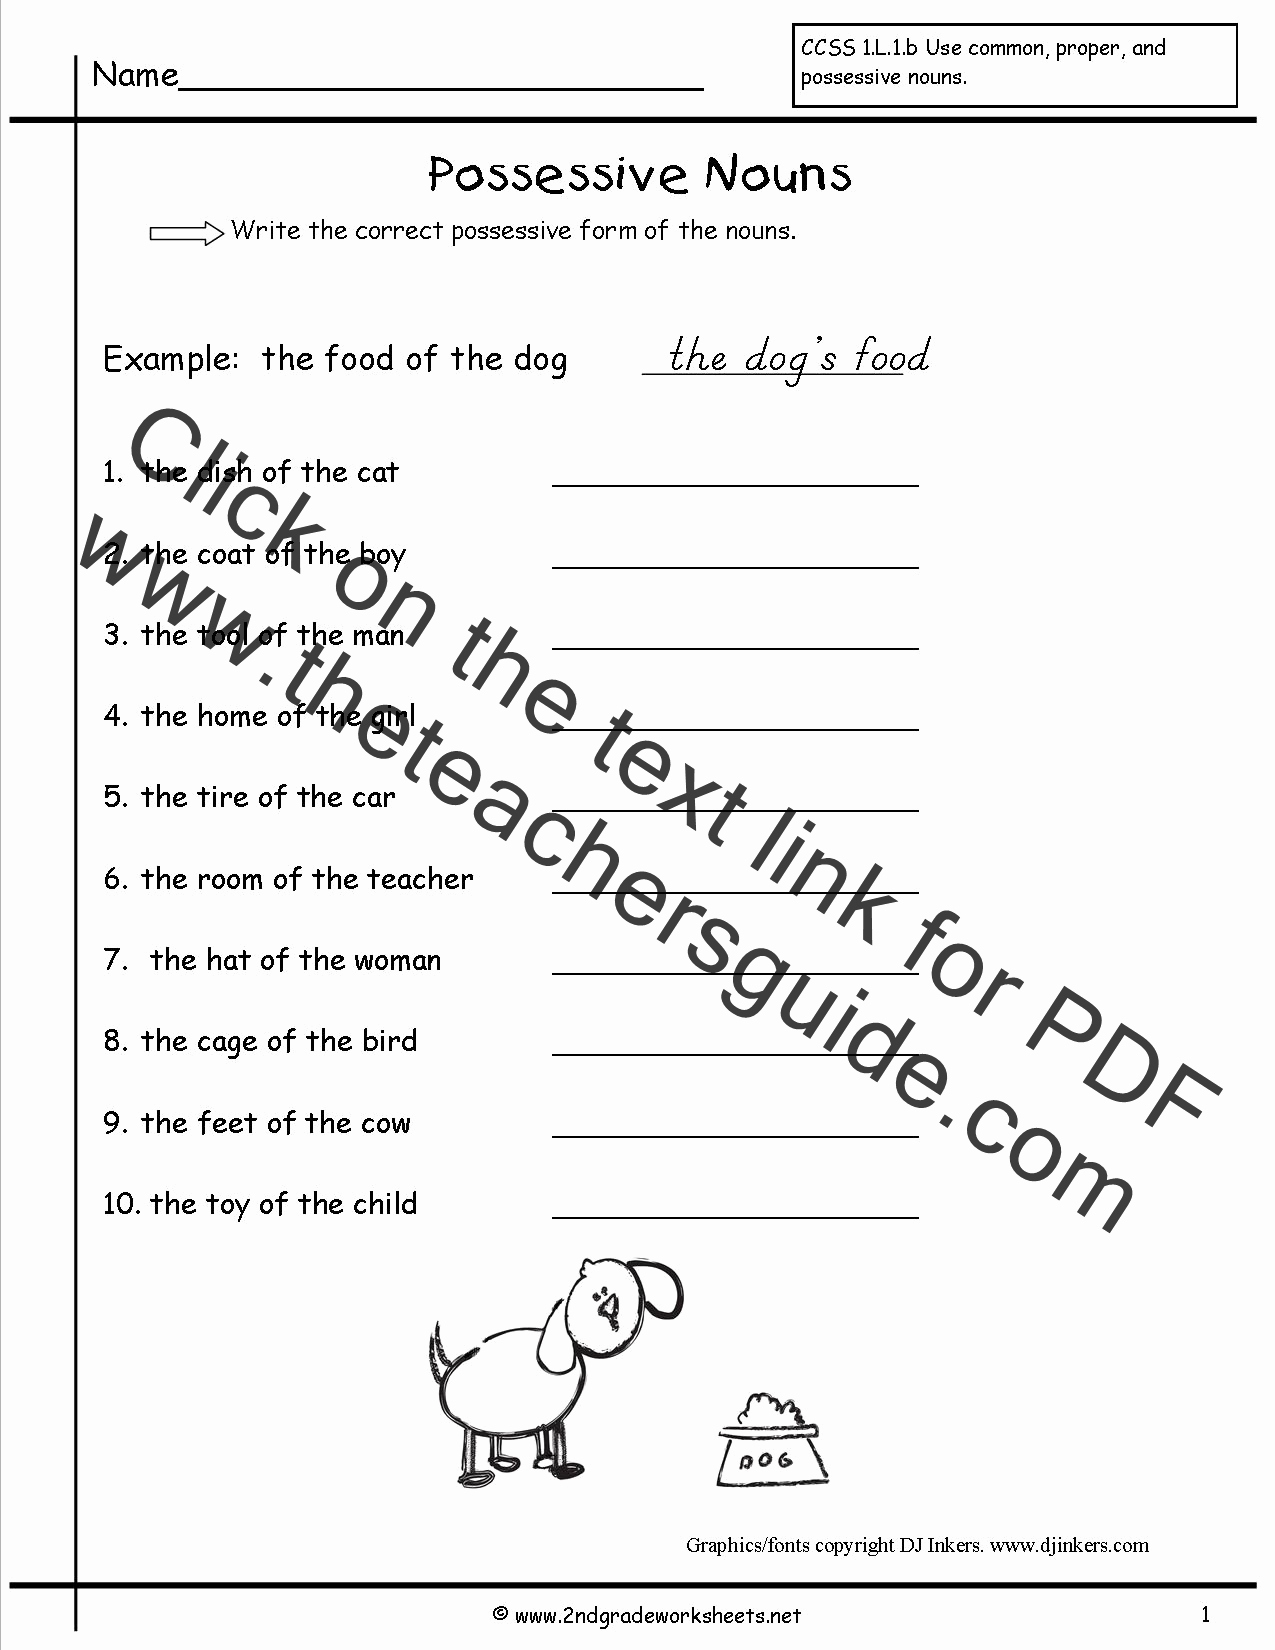 Possessive Pronouns Worksheet 2nd Grade Lovely Second Grade Possessive Nouns Worksheets